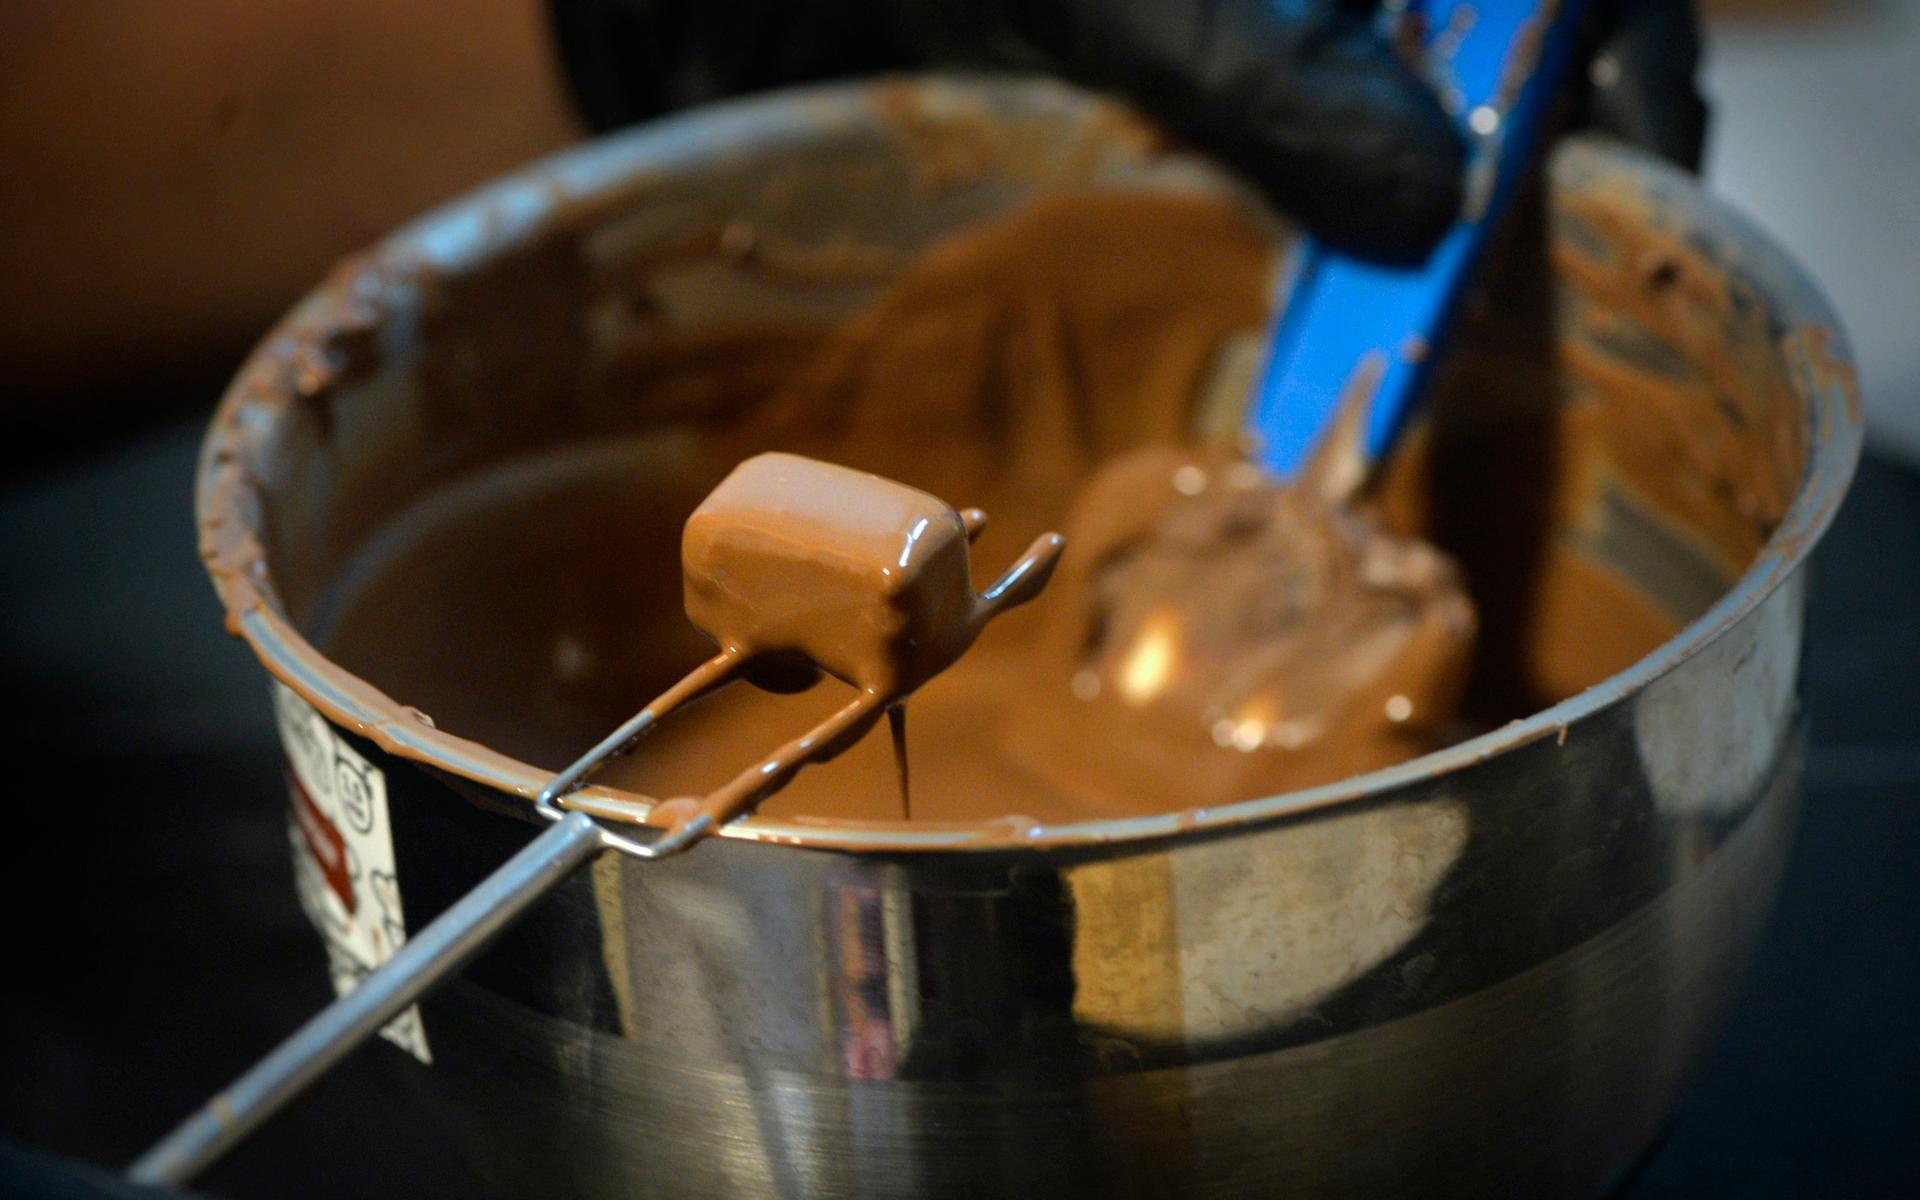 Det är ett visst tidsfönster som öppnas när chokladen har rätt temperatur för att doppas i. Sara, som har vanan inne, kan doppa uppemot 100 praliner innan chokladen hinner tjockna.